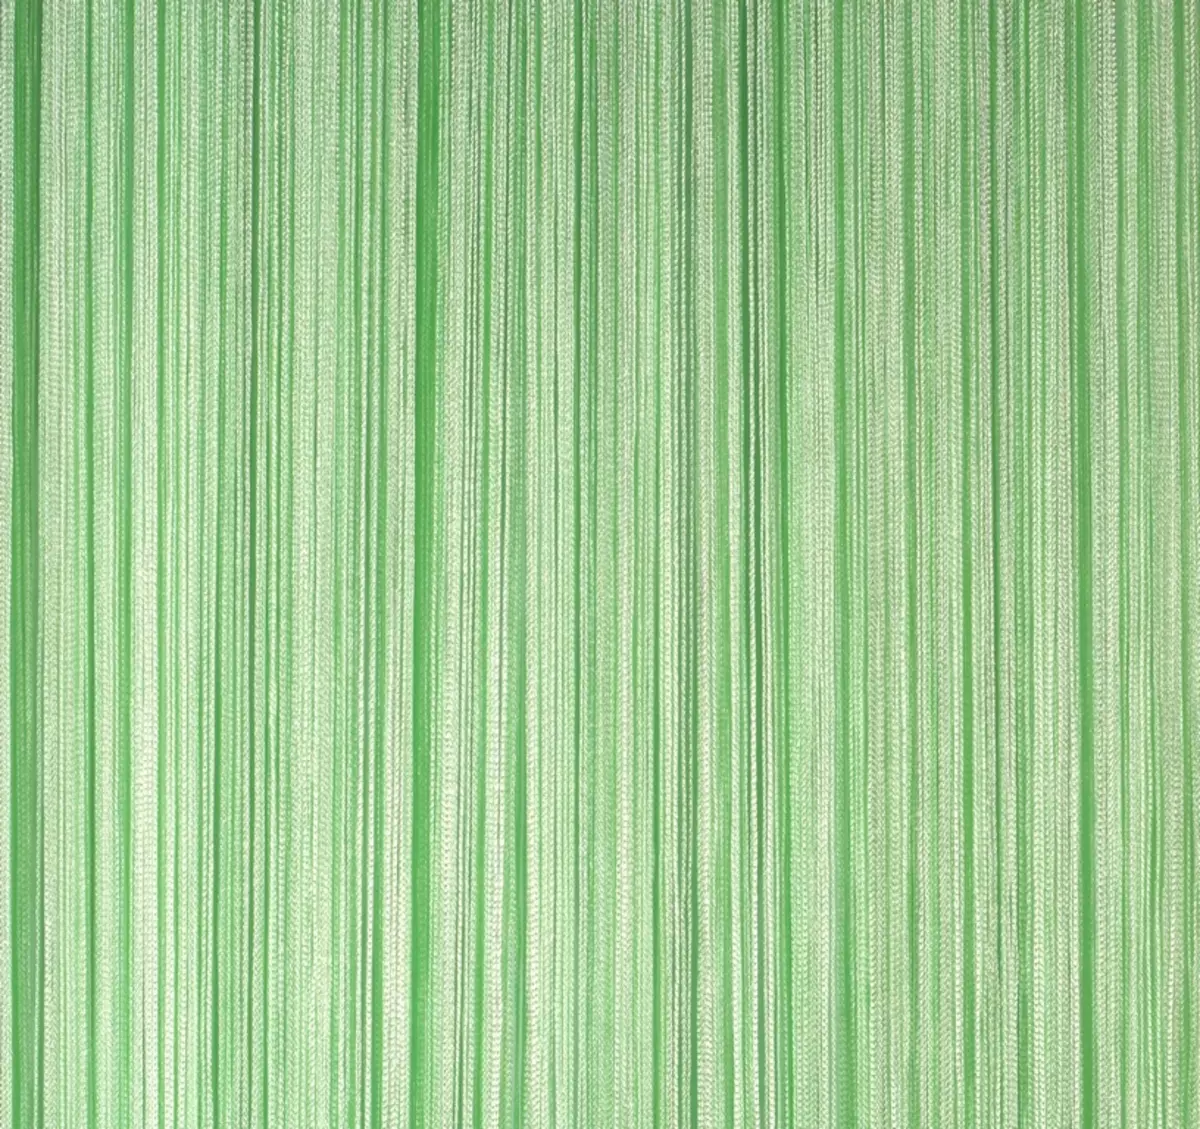 الستائر الخضراء في المطبخ (77 صور): البيج-سلطة والفستق ألوان الستائر لالمطبخ الأبيض والبرتقالي، والديكورات الداخلية مع تول أخضر أرجواني 20973_42